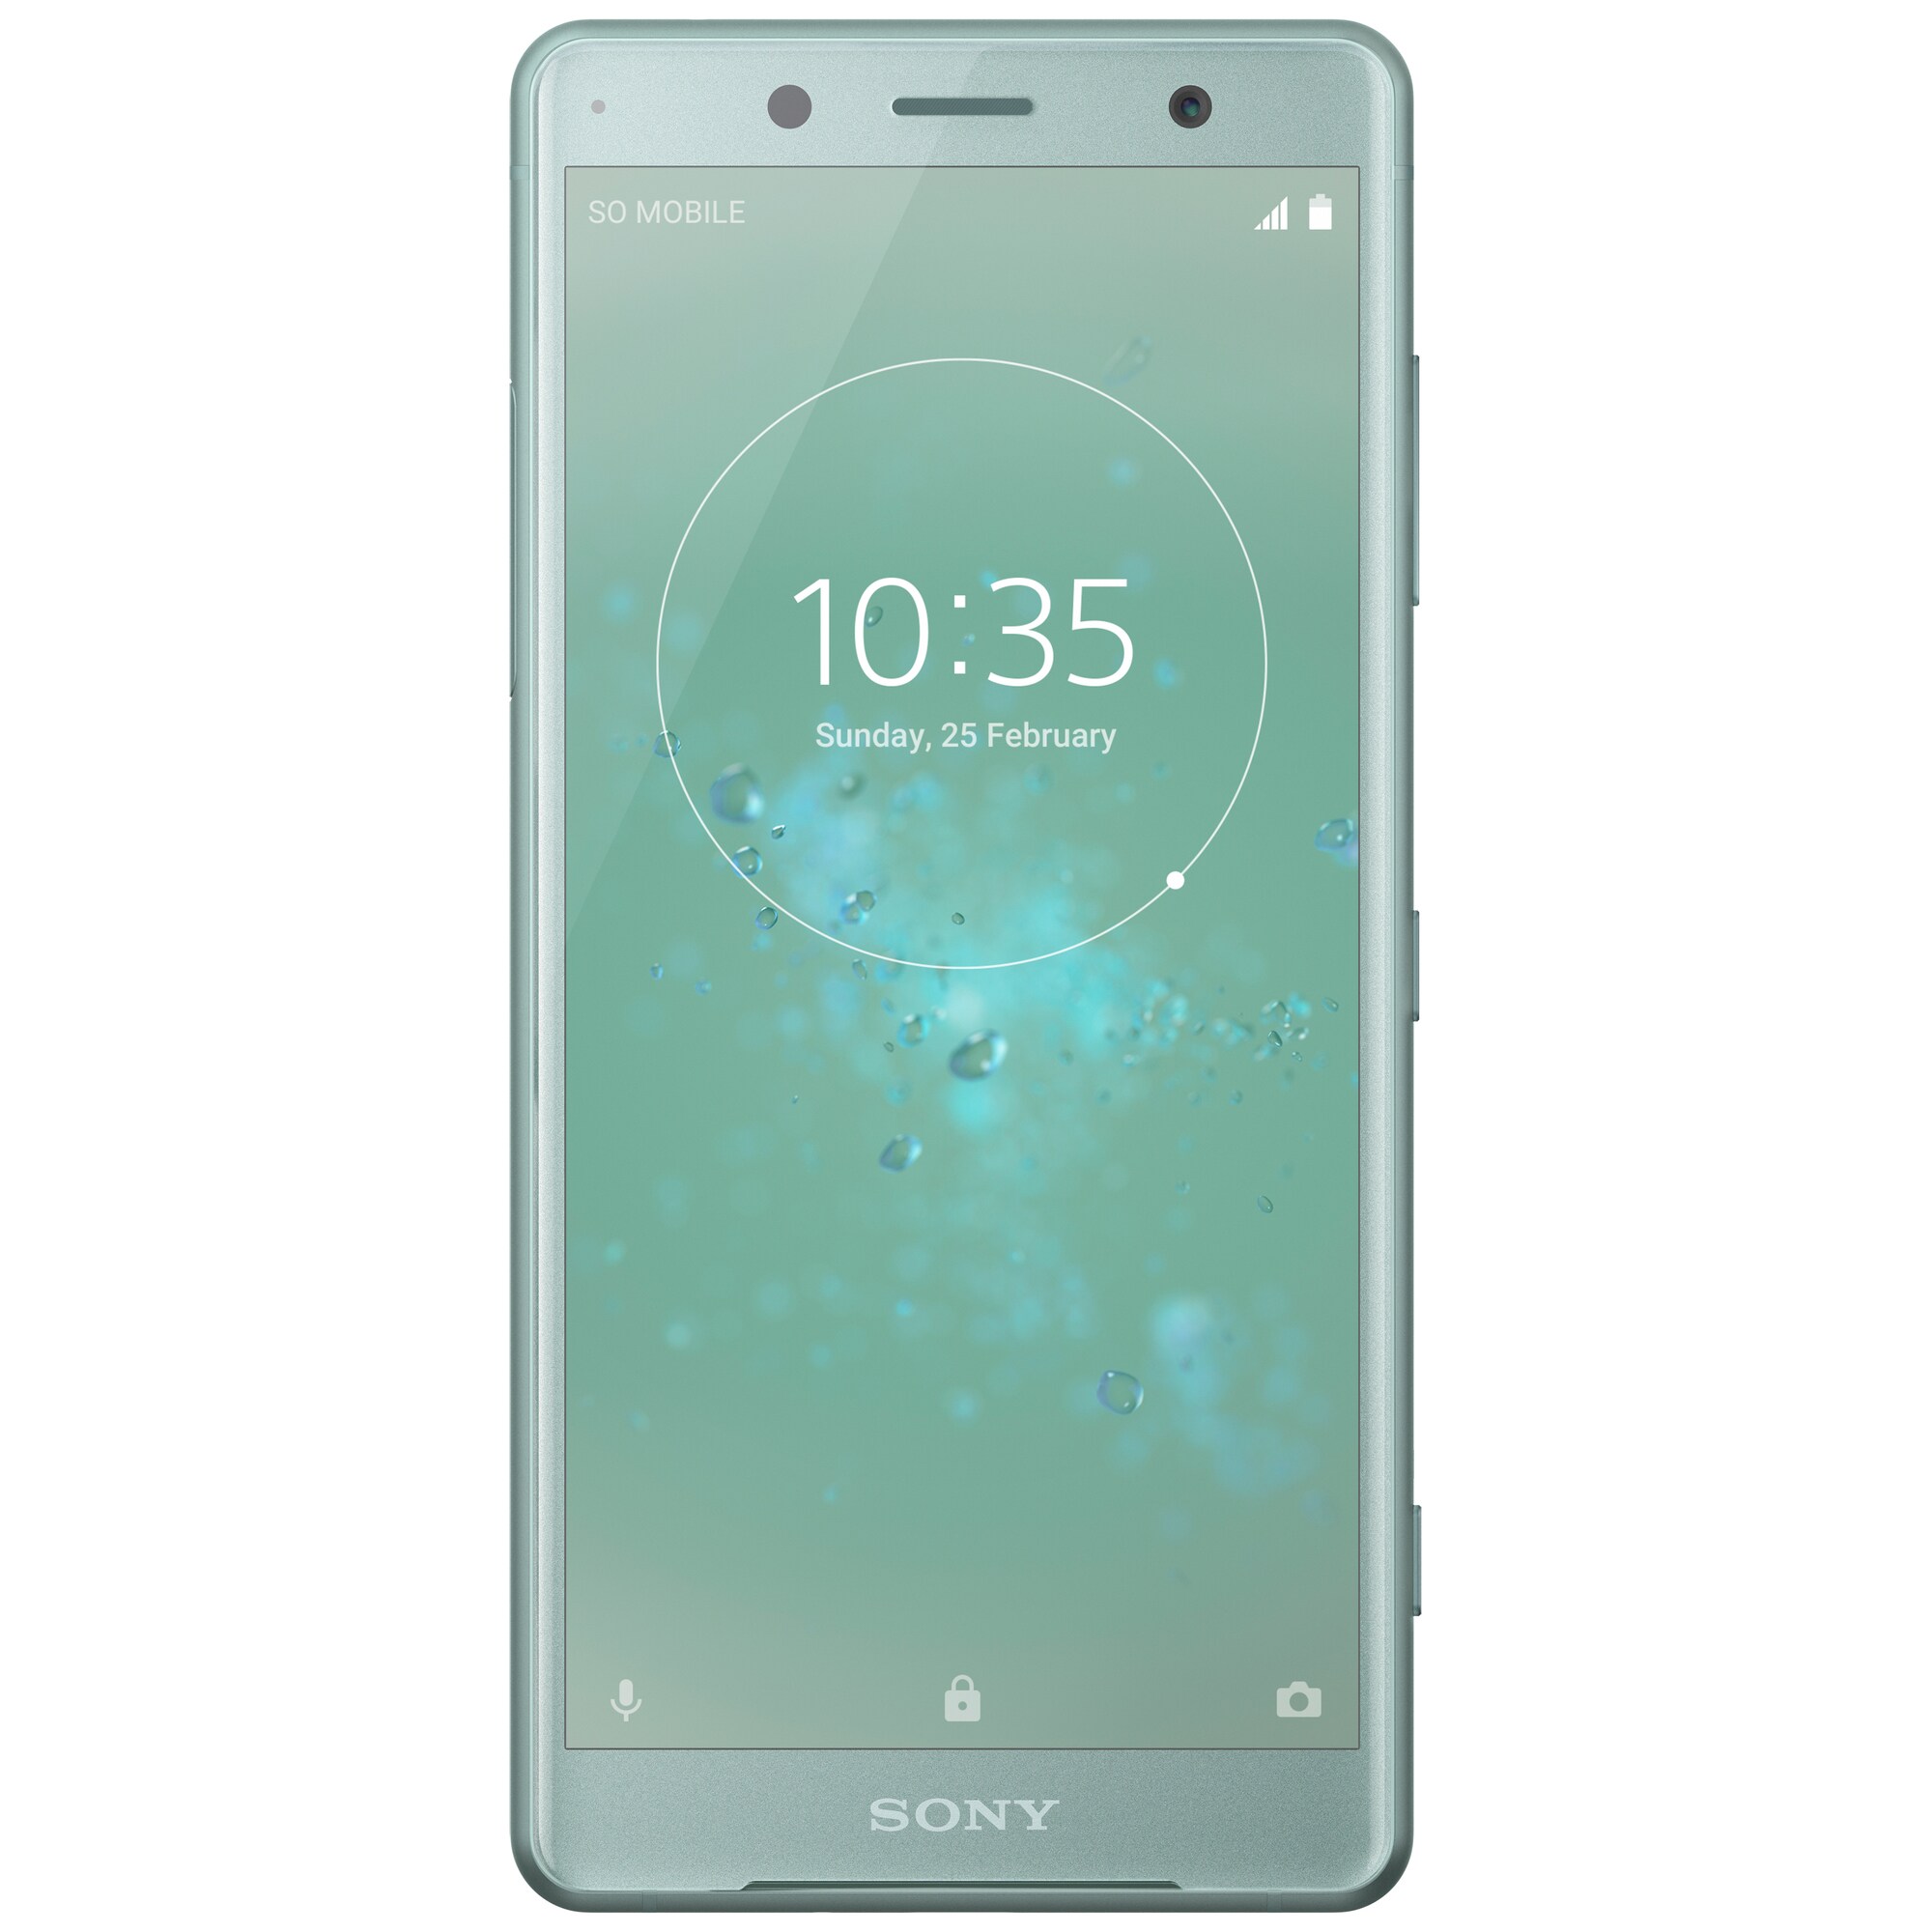 Sony Xperia XZ2 Compact smarttelefon (mosegrønn) - Elkjøp